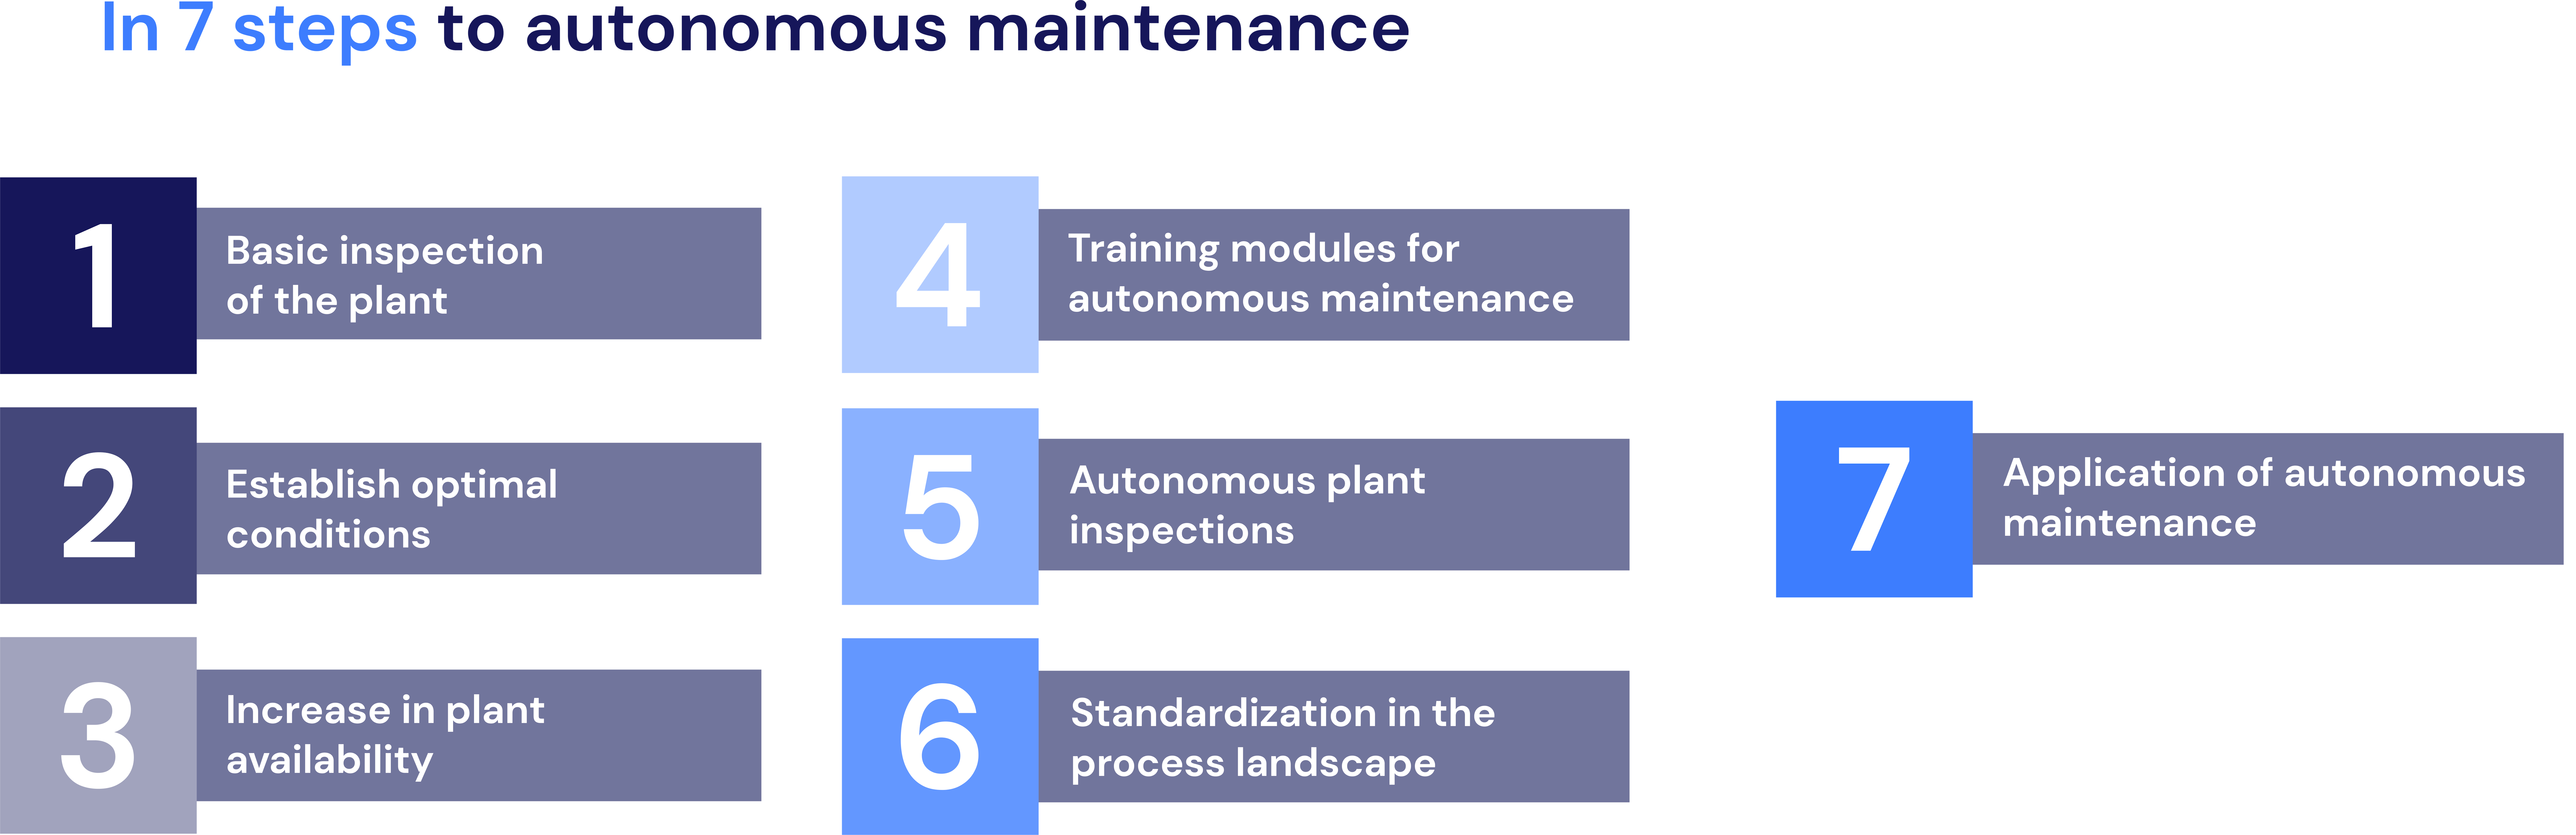 7 steps towards autonomous maintenance